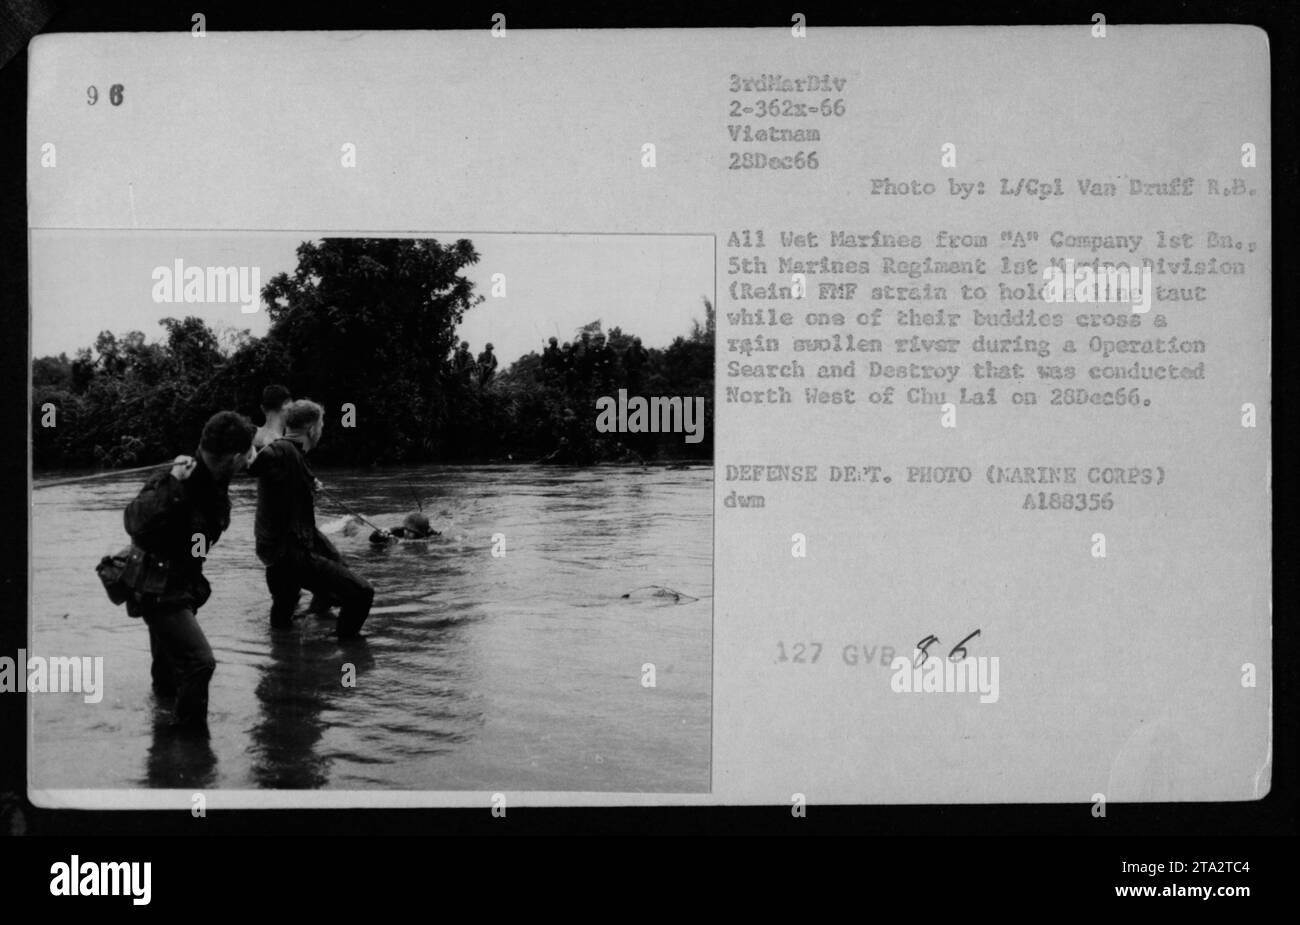 Marines der A-Kompanie, 1. Bataillon, 5. Marines-Regiment, 1. Marine-Division, wurden am 28. Dezember 1966 während einer Such- und Zerstörungsoperation nordwestlich von Chu Lai, Vietnam, fotografiert. Das Foto zeigt die Marines, die mit Hilfe ihrer Kameraden einen regengeschwollenen Fluss überqueren, während sie sich anstrengen, um eine straffe Linie zu halten. Stockfoto